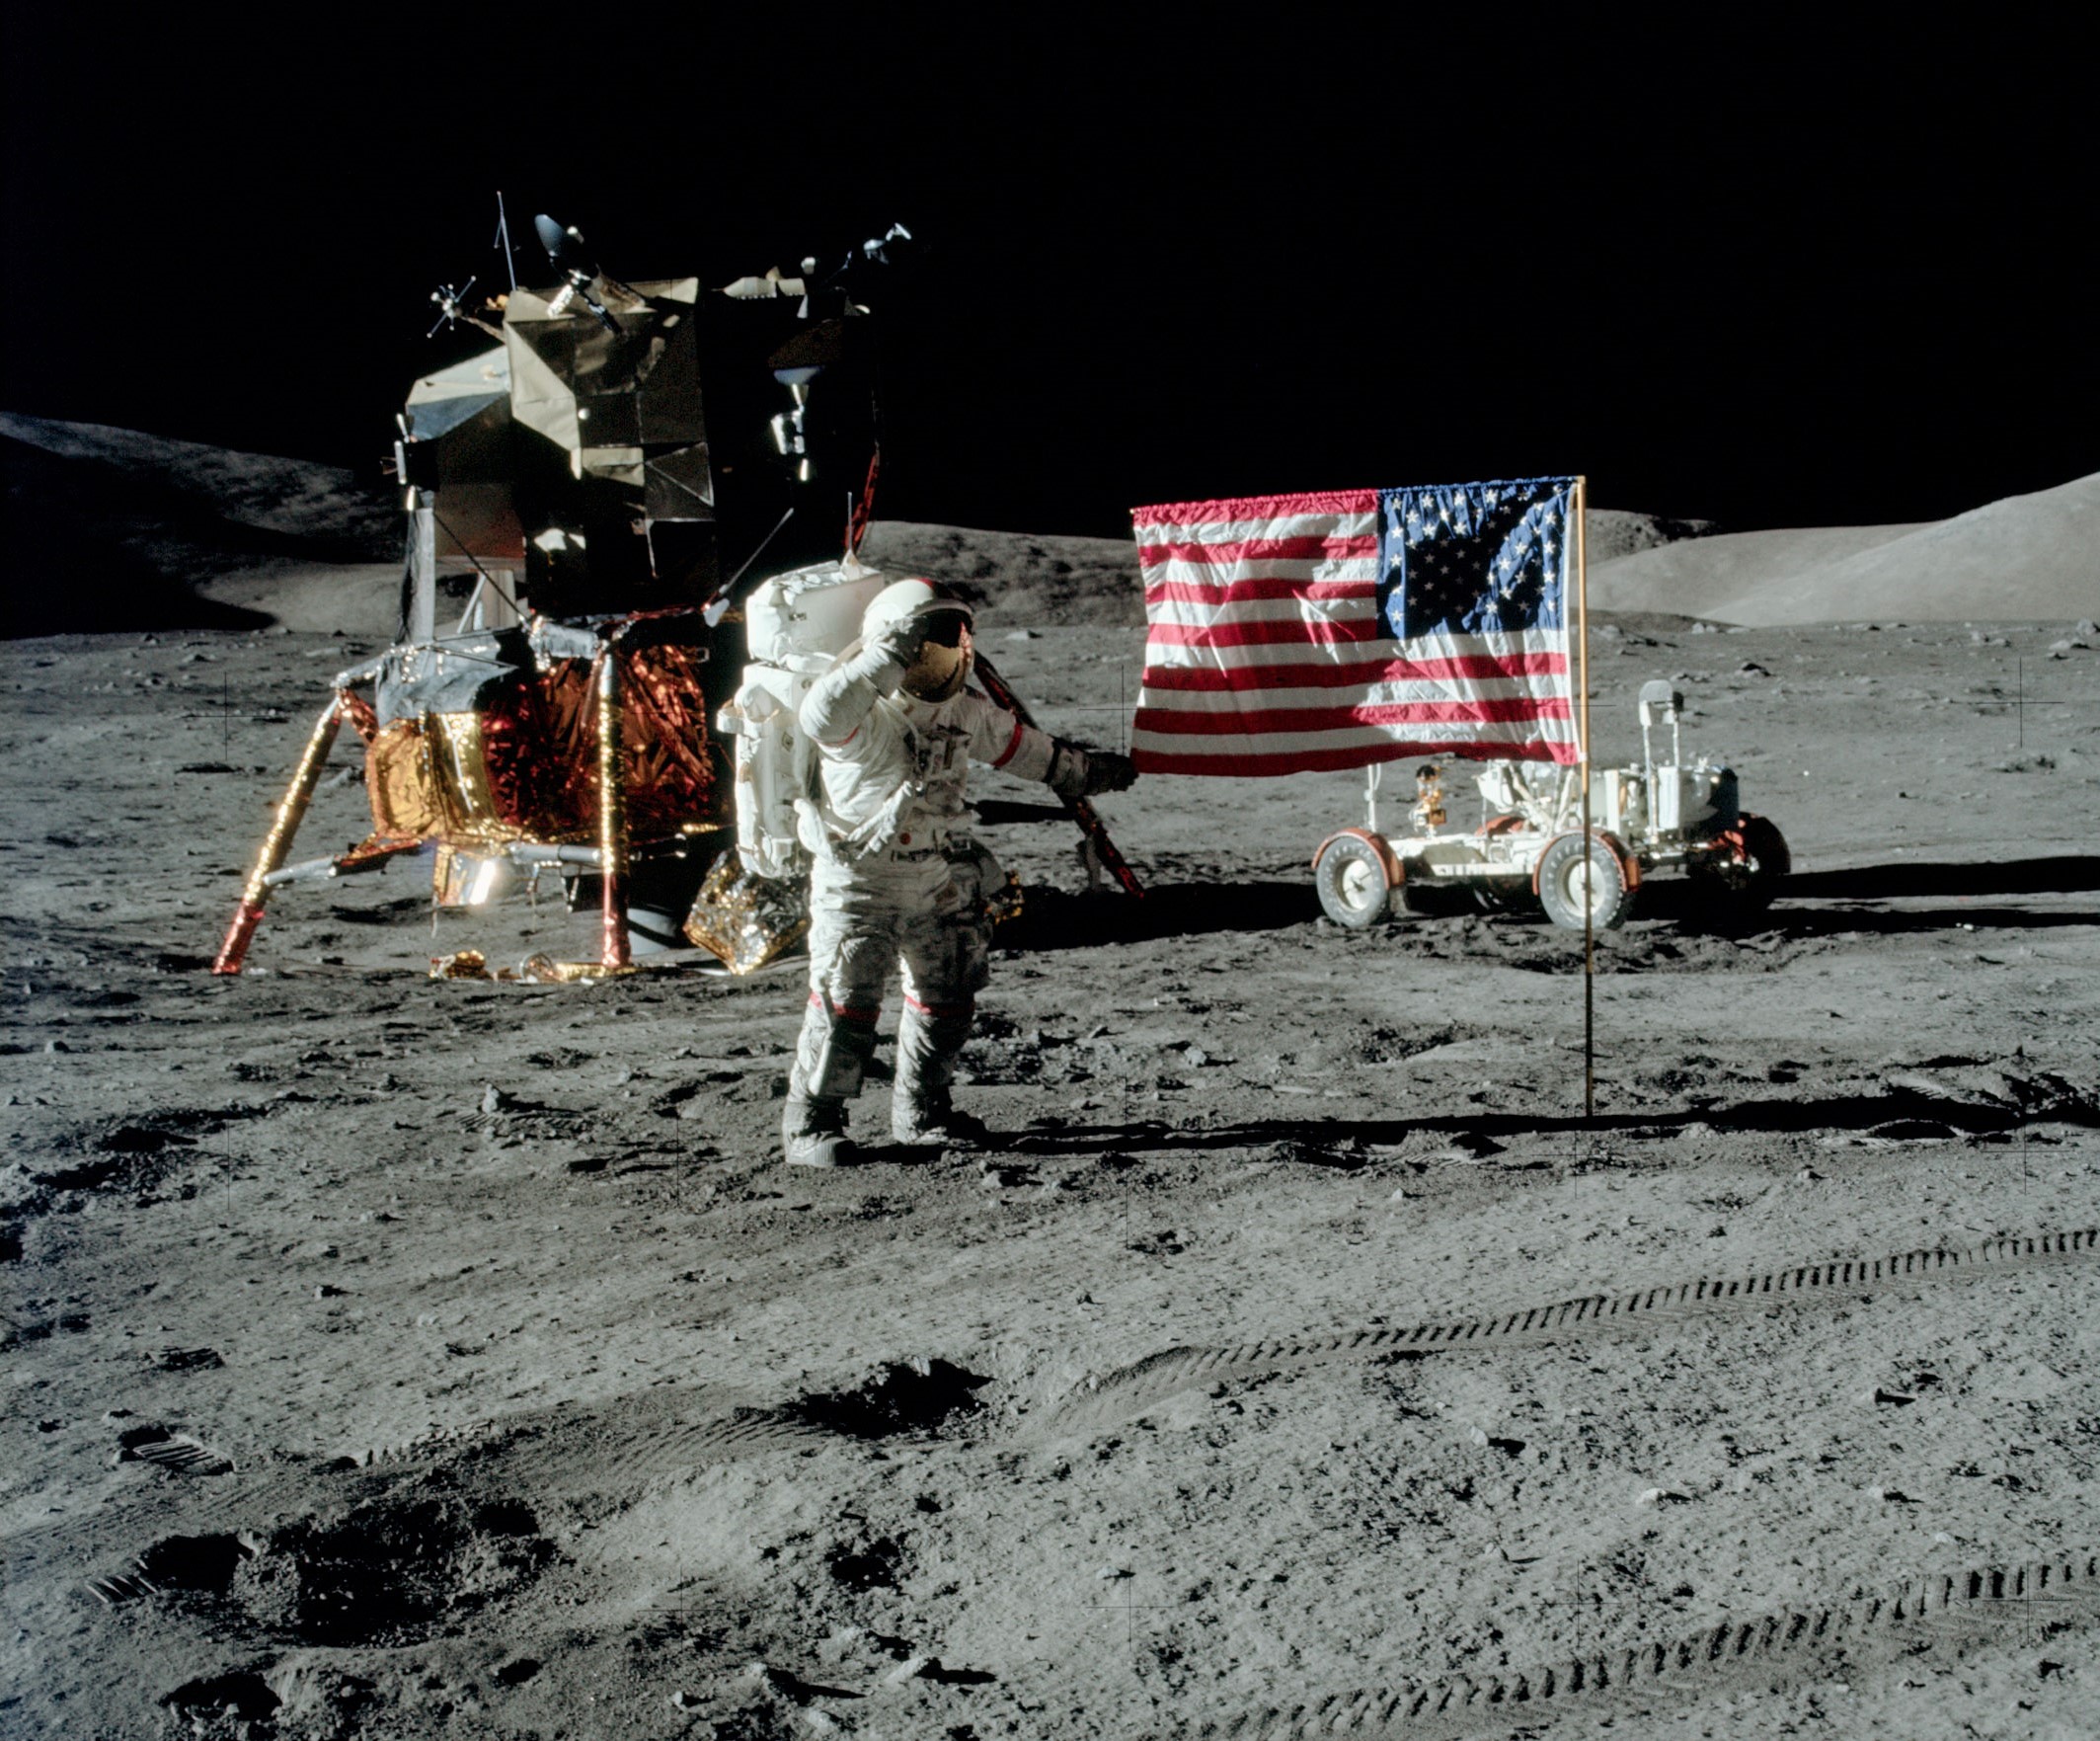 Человек который впервые оказался на поверхности луны. Аполлон 17 Юджин Сернан. Миссия Аполлон 17. Юджин Сернан, 1972 год. Последний человек на Луне.. 1972 Год космический корабль Аполлон 17.